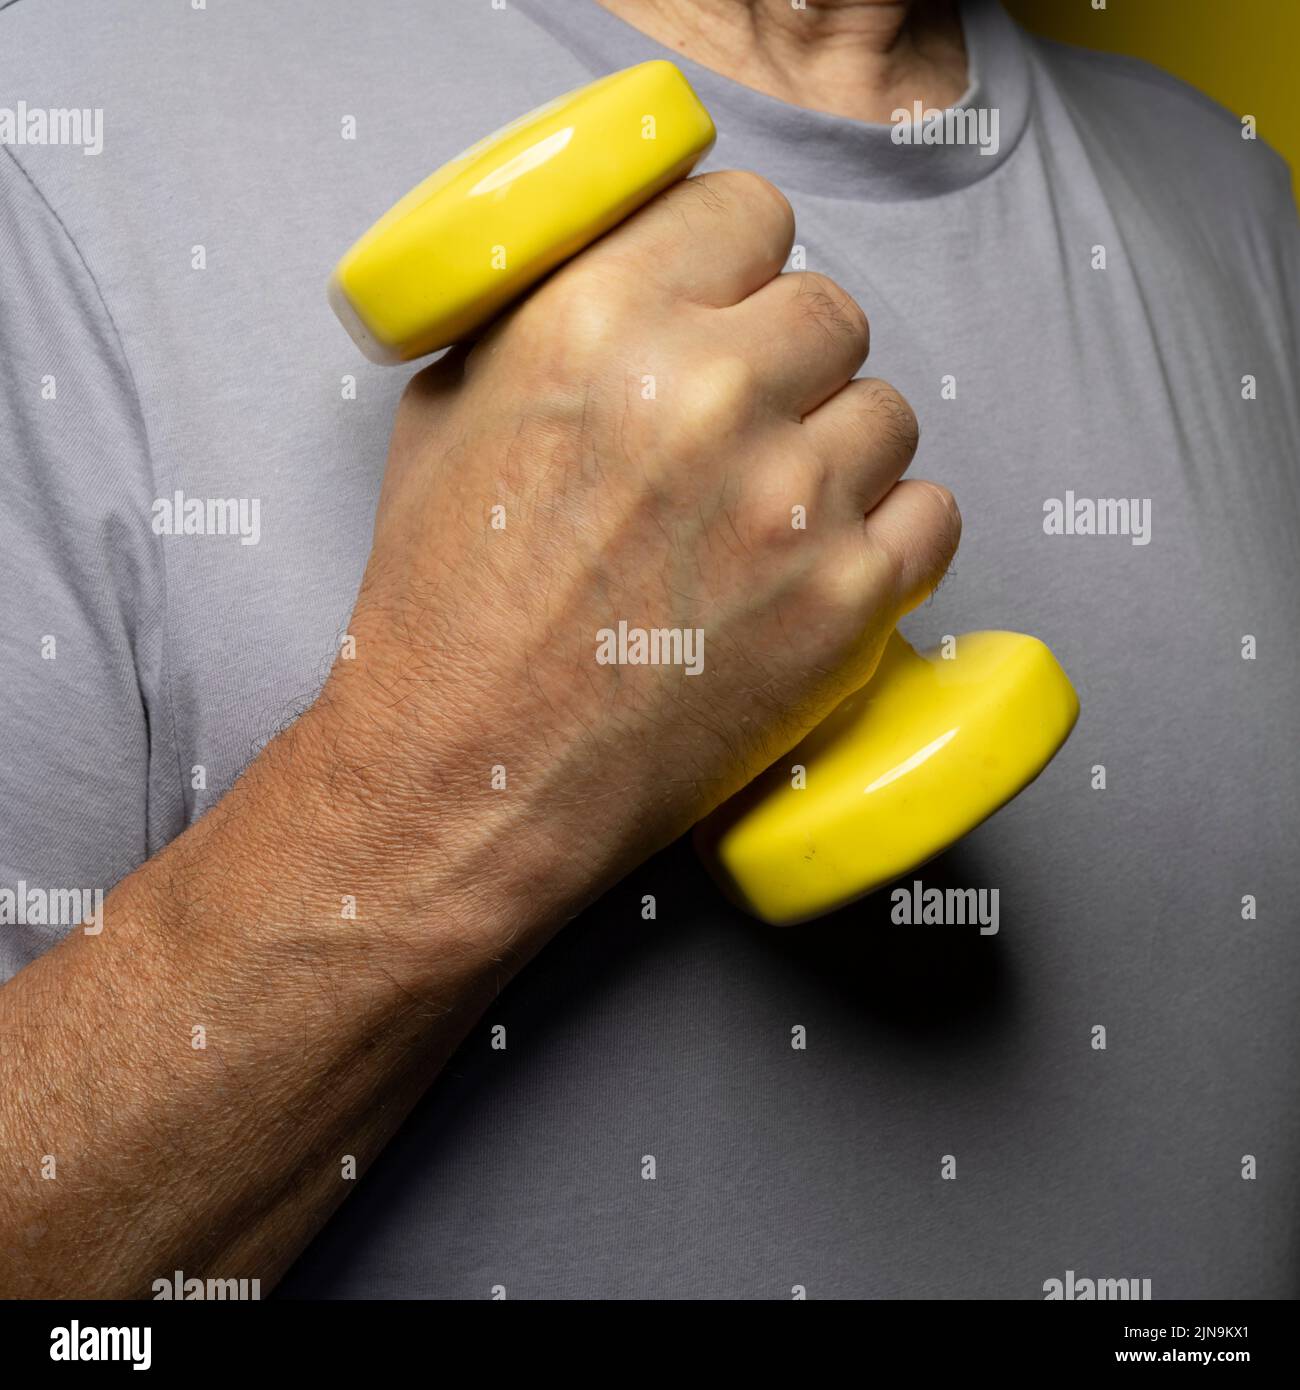 pesas gimnásticas amarillas en la mano Foto de stock